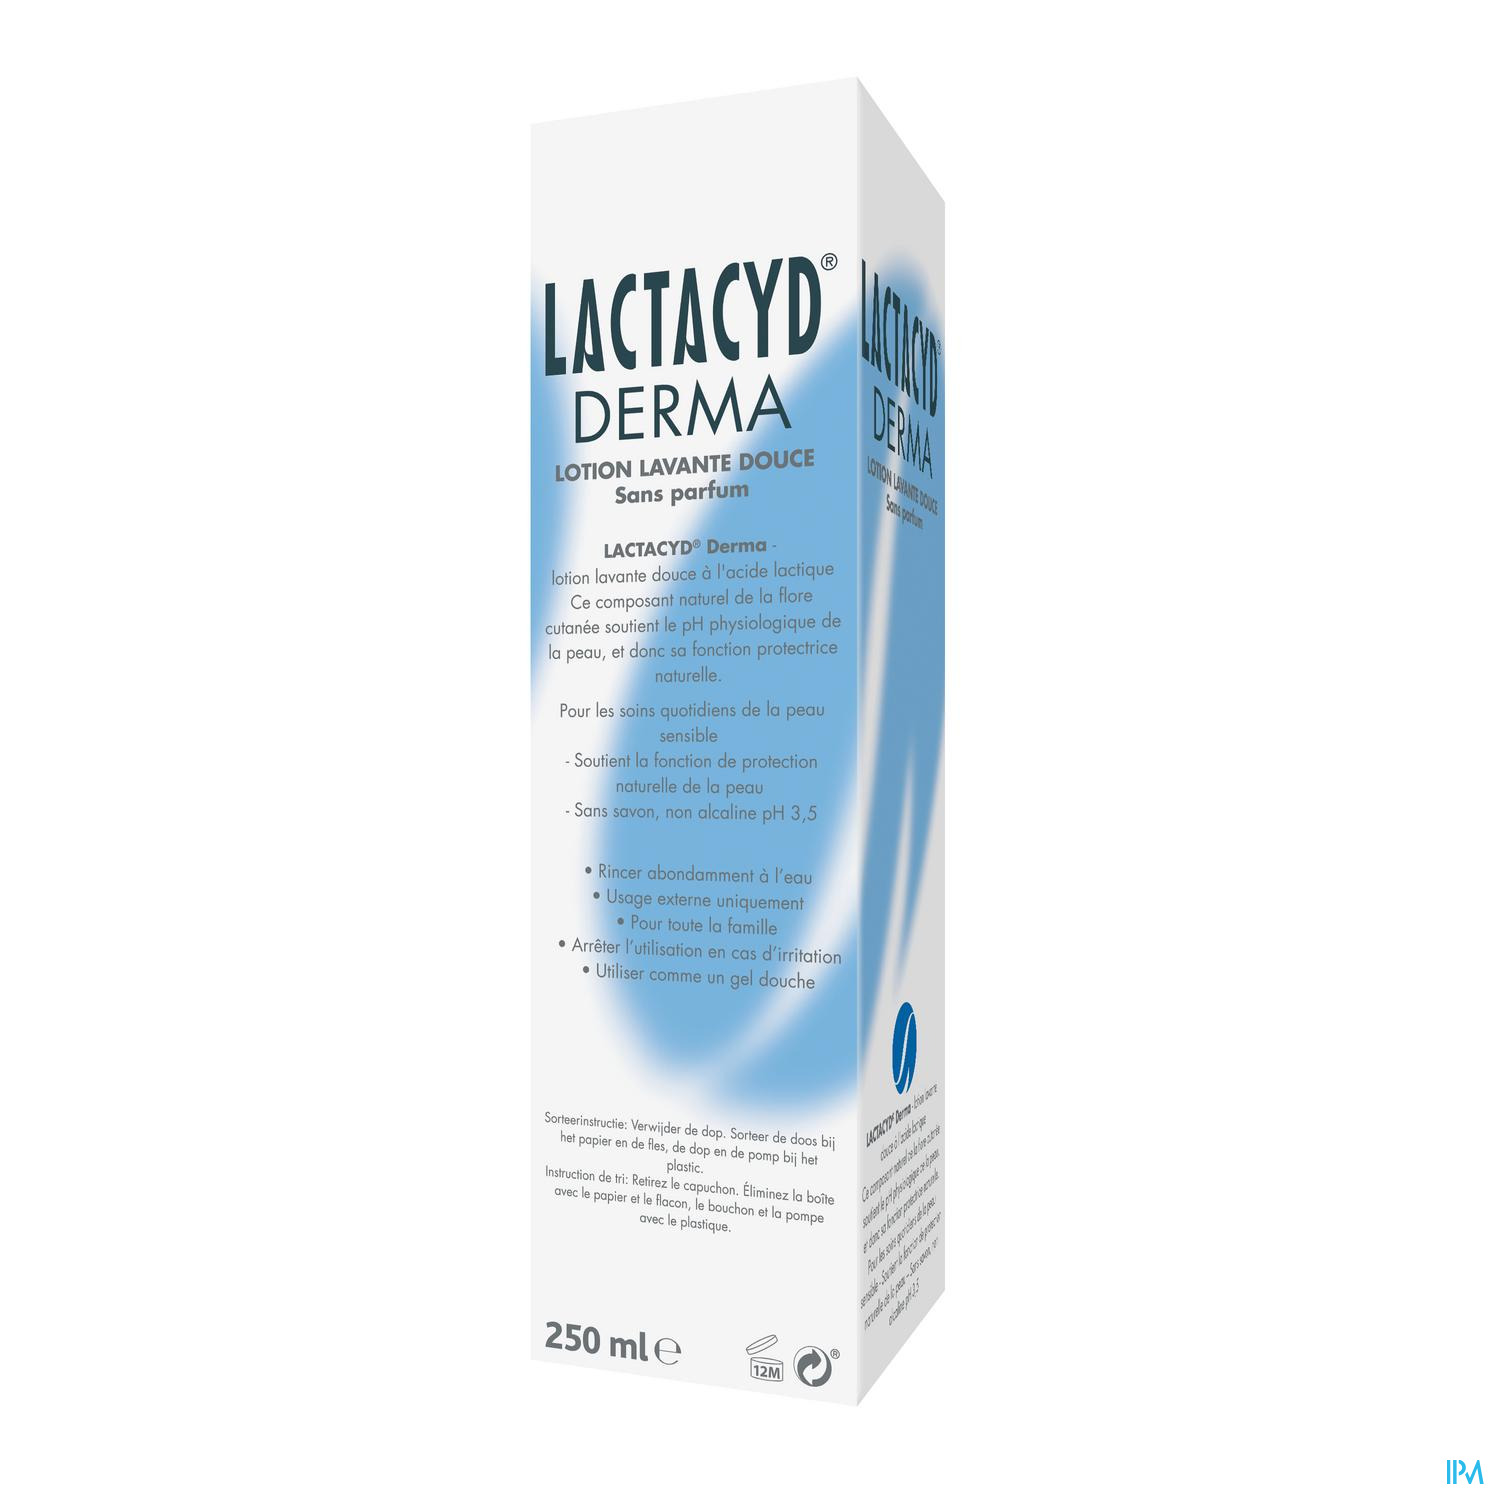 Lactacyd Derma Wasemuls Z/zeep 250ml